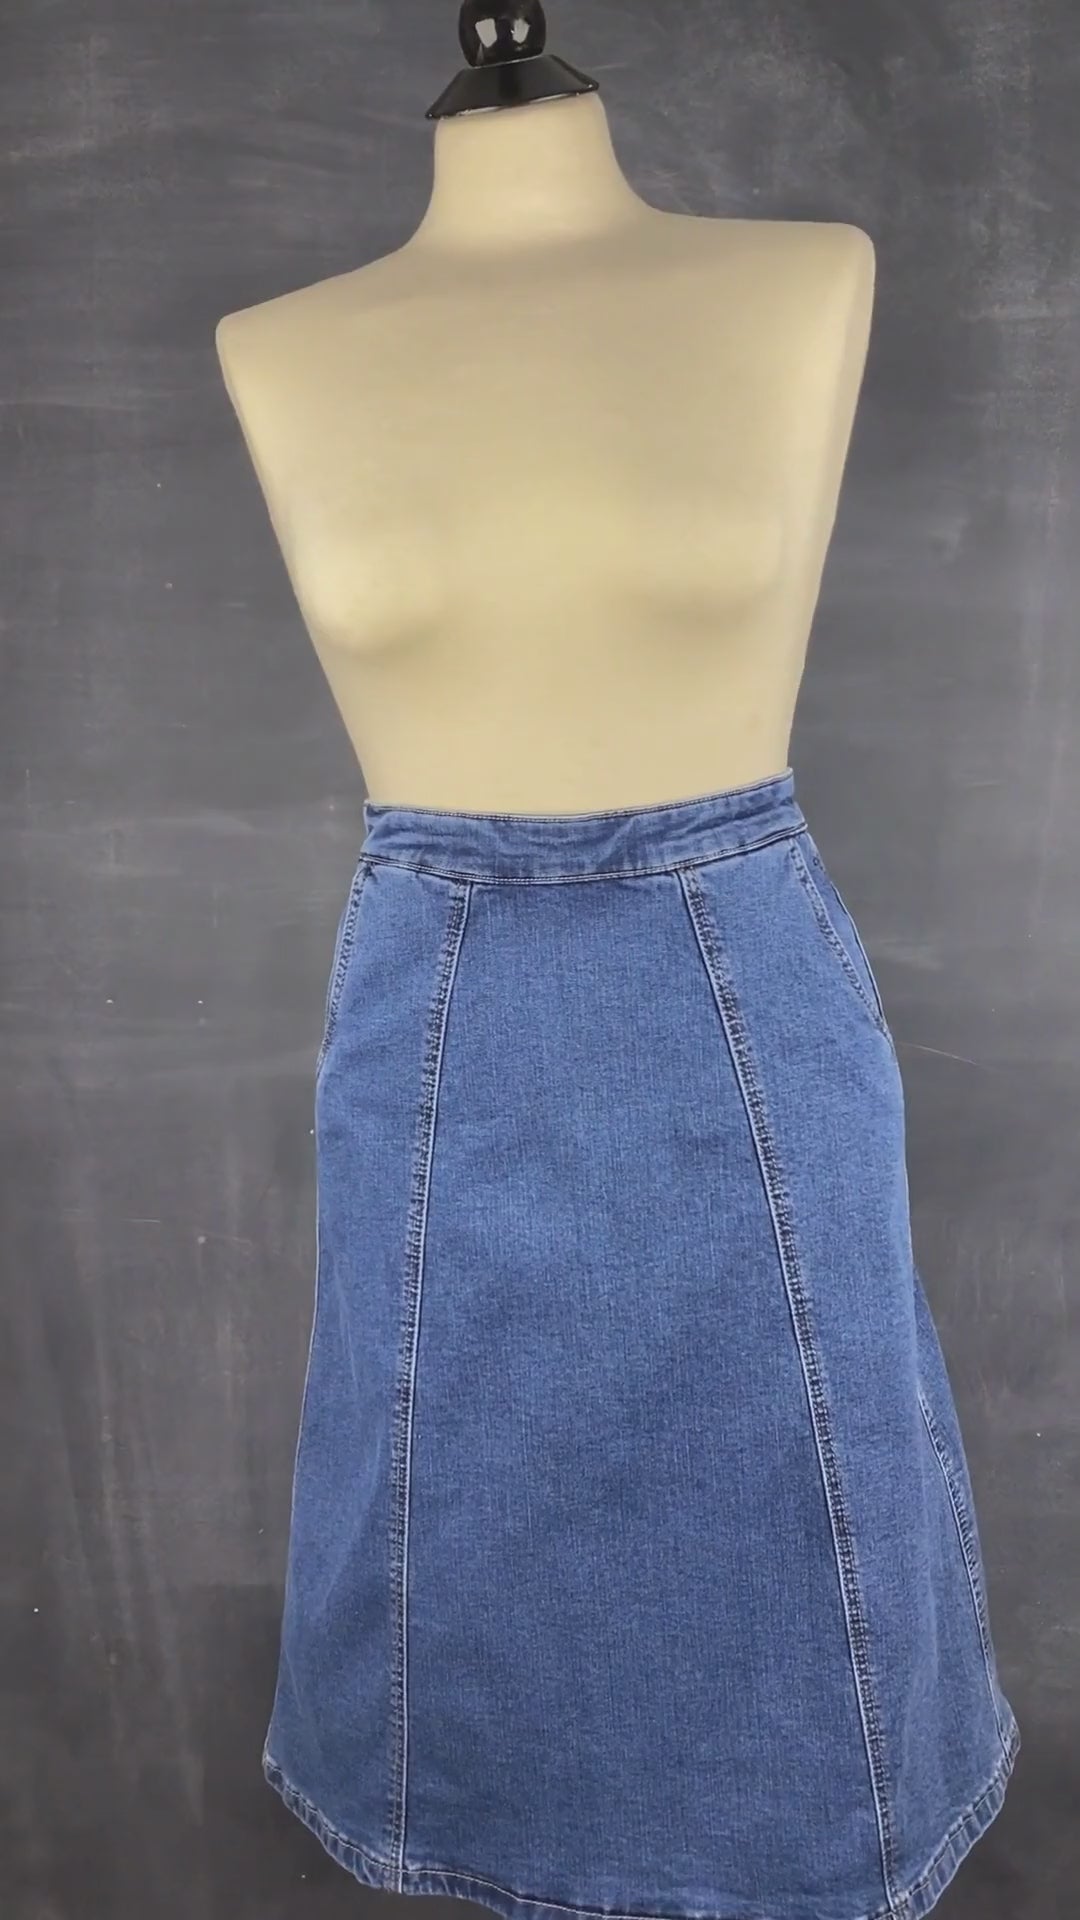 Jupe seconde main en jeans ligne A. Marque Icône par Simons, taille small. Vue de la vidéo qui présente tous les angles de la jupe.